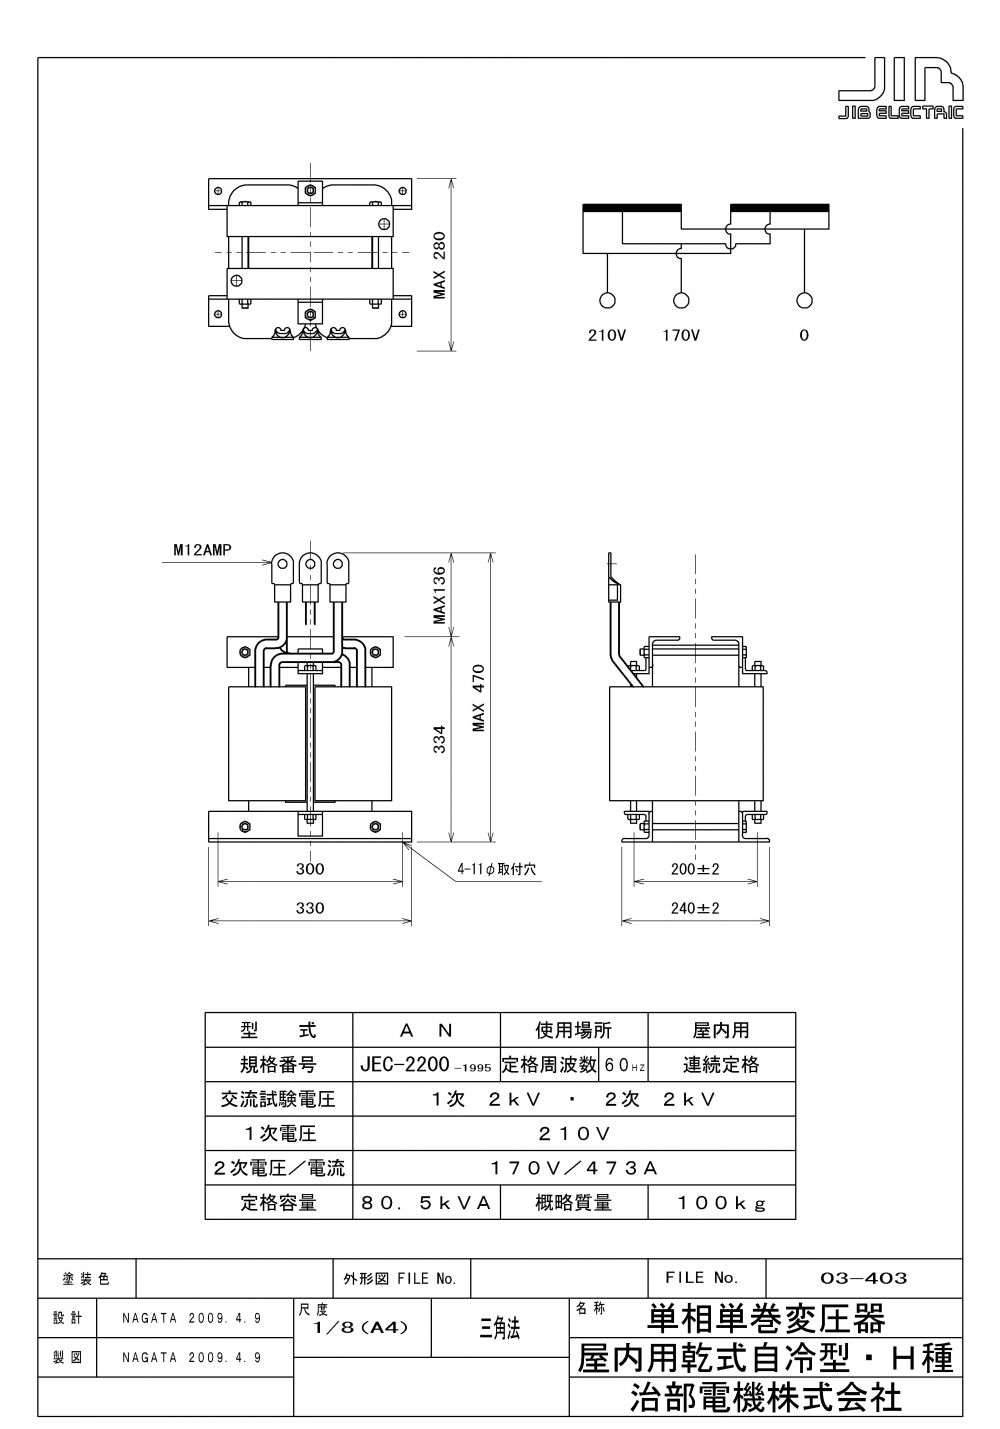 おすすめネット 今井電機 省ｽﾍﾟｰｽ型単相乾式複巻変圧器 BSW-750C2-62 産業機器 変圧器 fucoa.cl